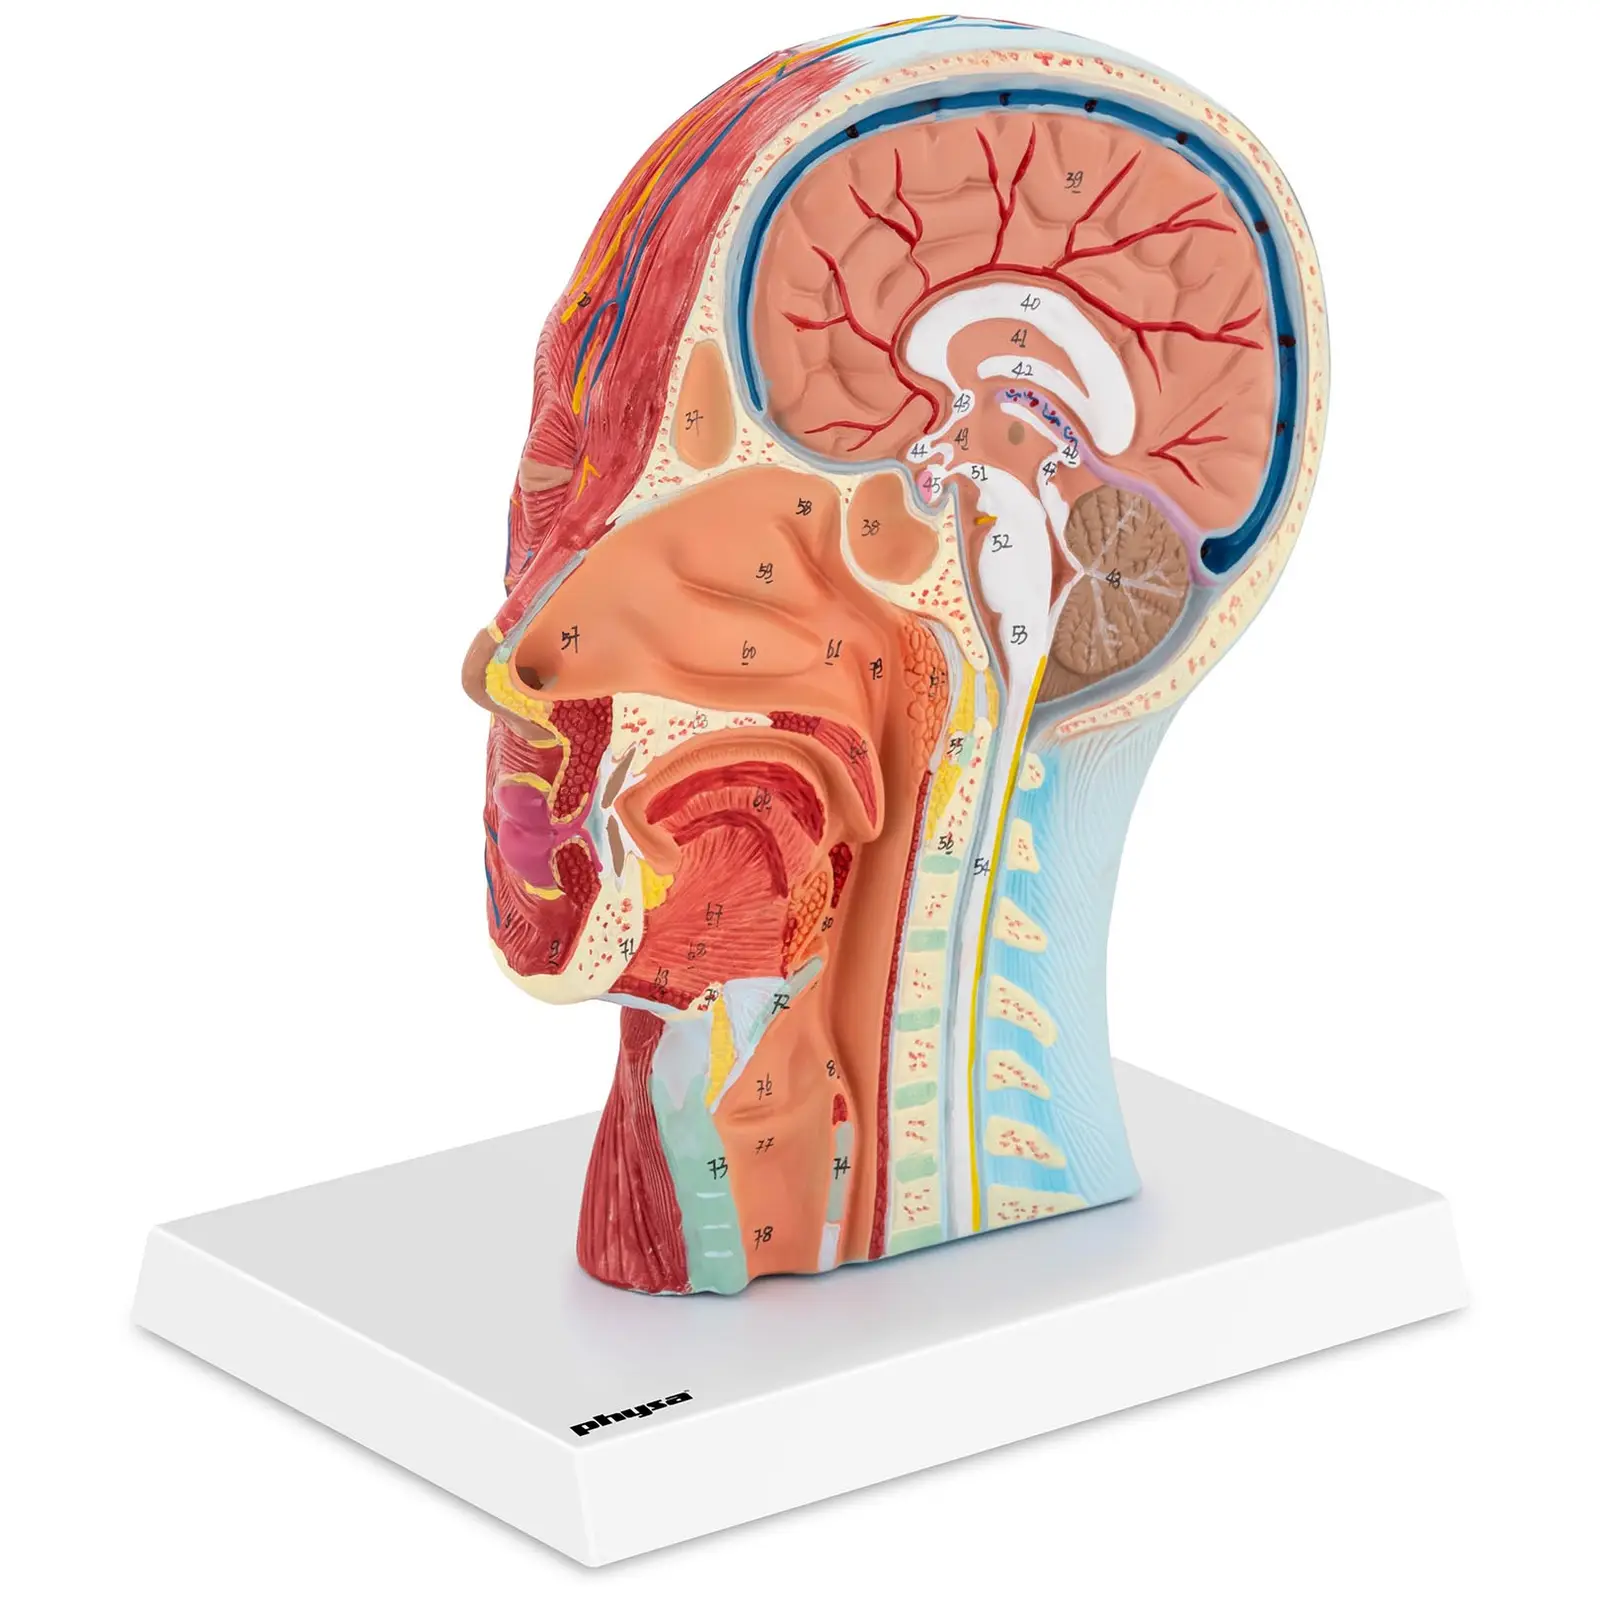 Vergrößerung 2X Menschen Gehirn Brainstem Medianschnitt Anatomie Modell 